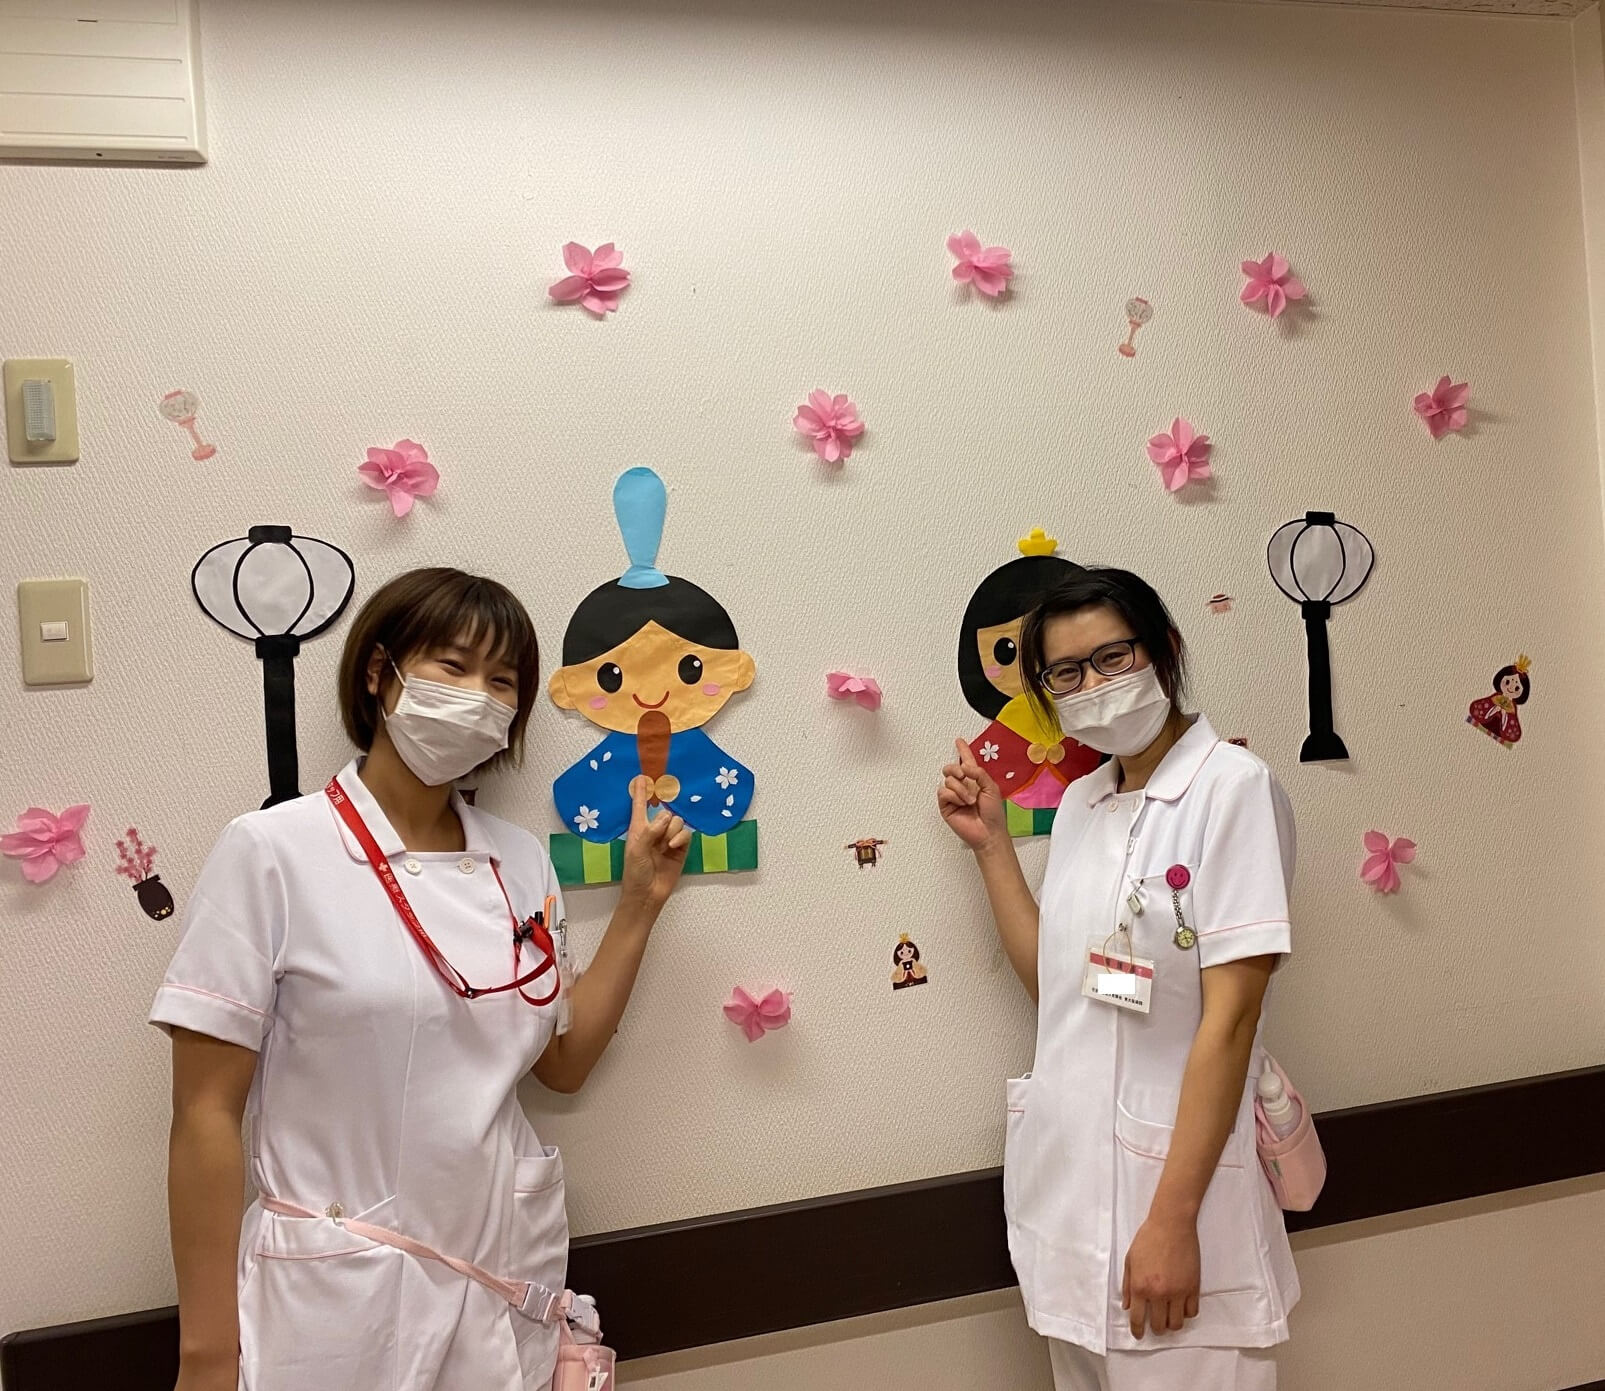 中国人看護師 大阪で働く 社会医療法人 有隣会 東大阪病院 看護部 大阪の看護師求人 看護師転職